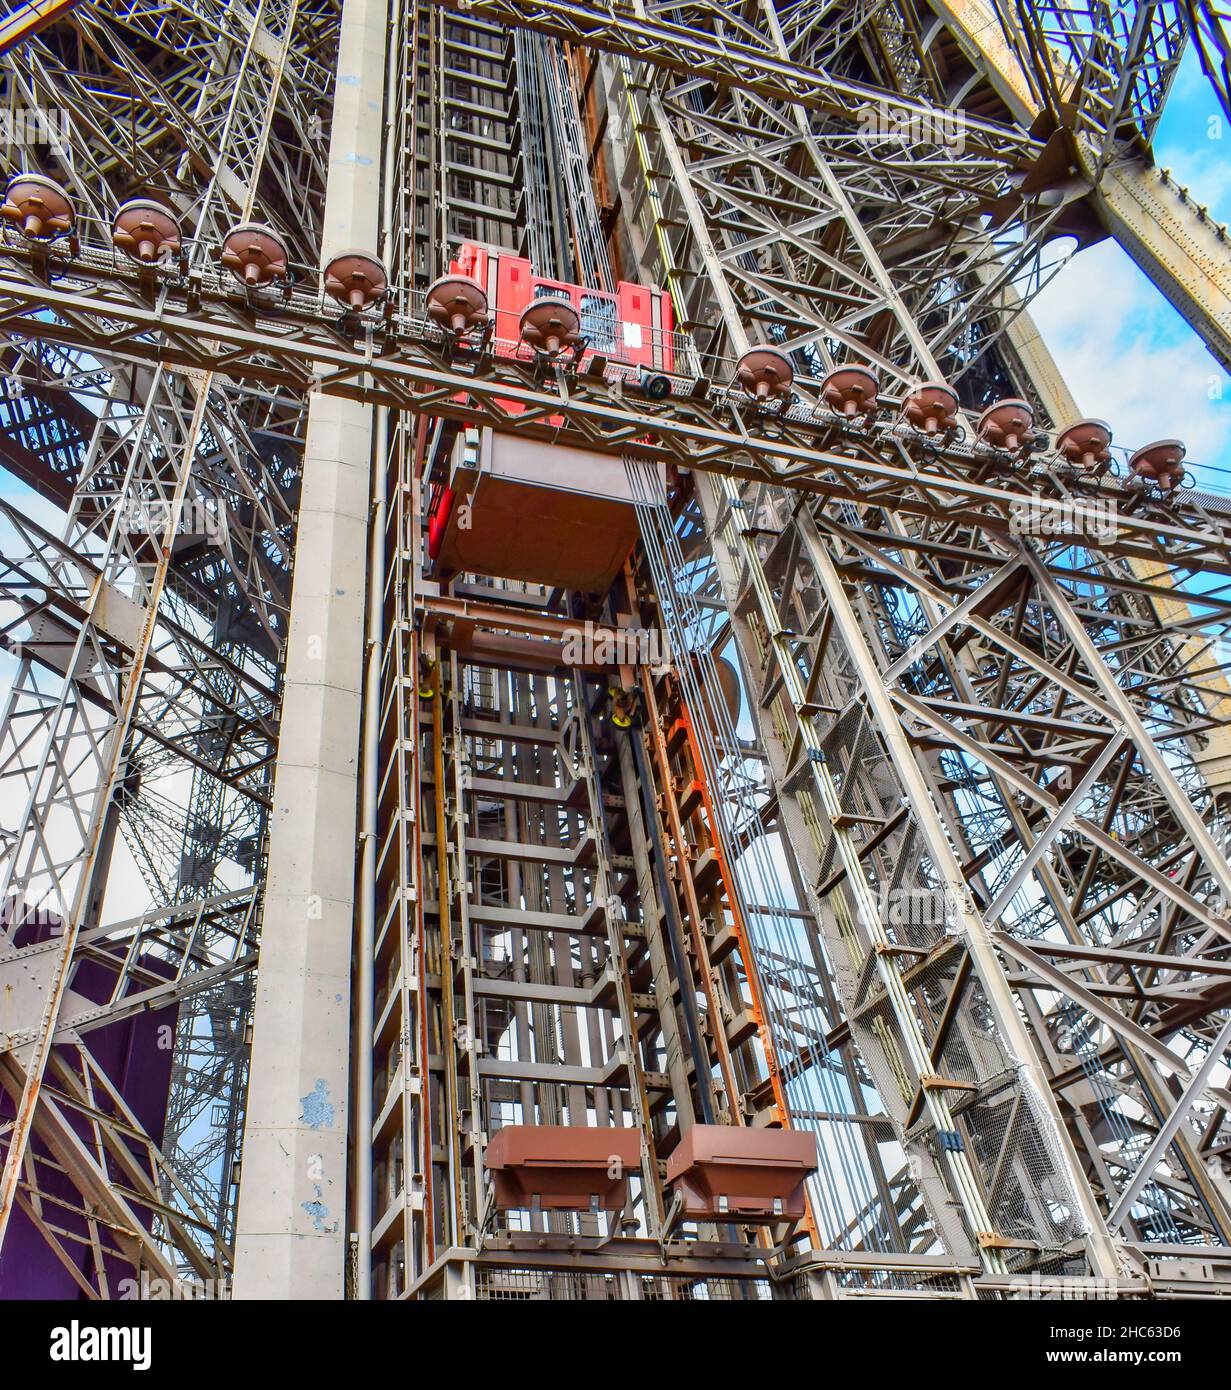 Ascensor elevador y estructura metálica de la torre Eiffel de Paris, Francia Stock Photo